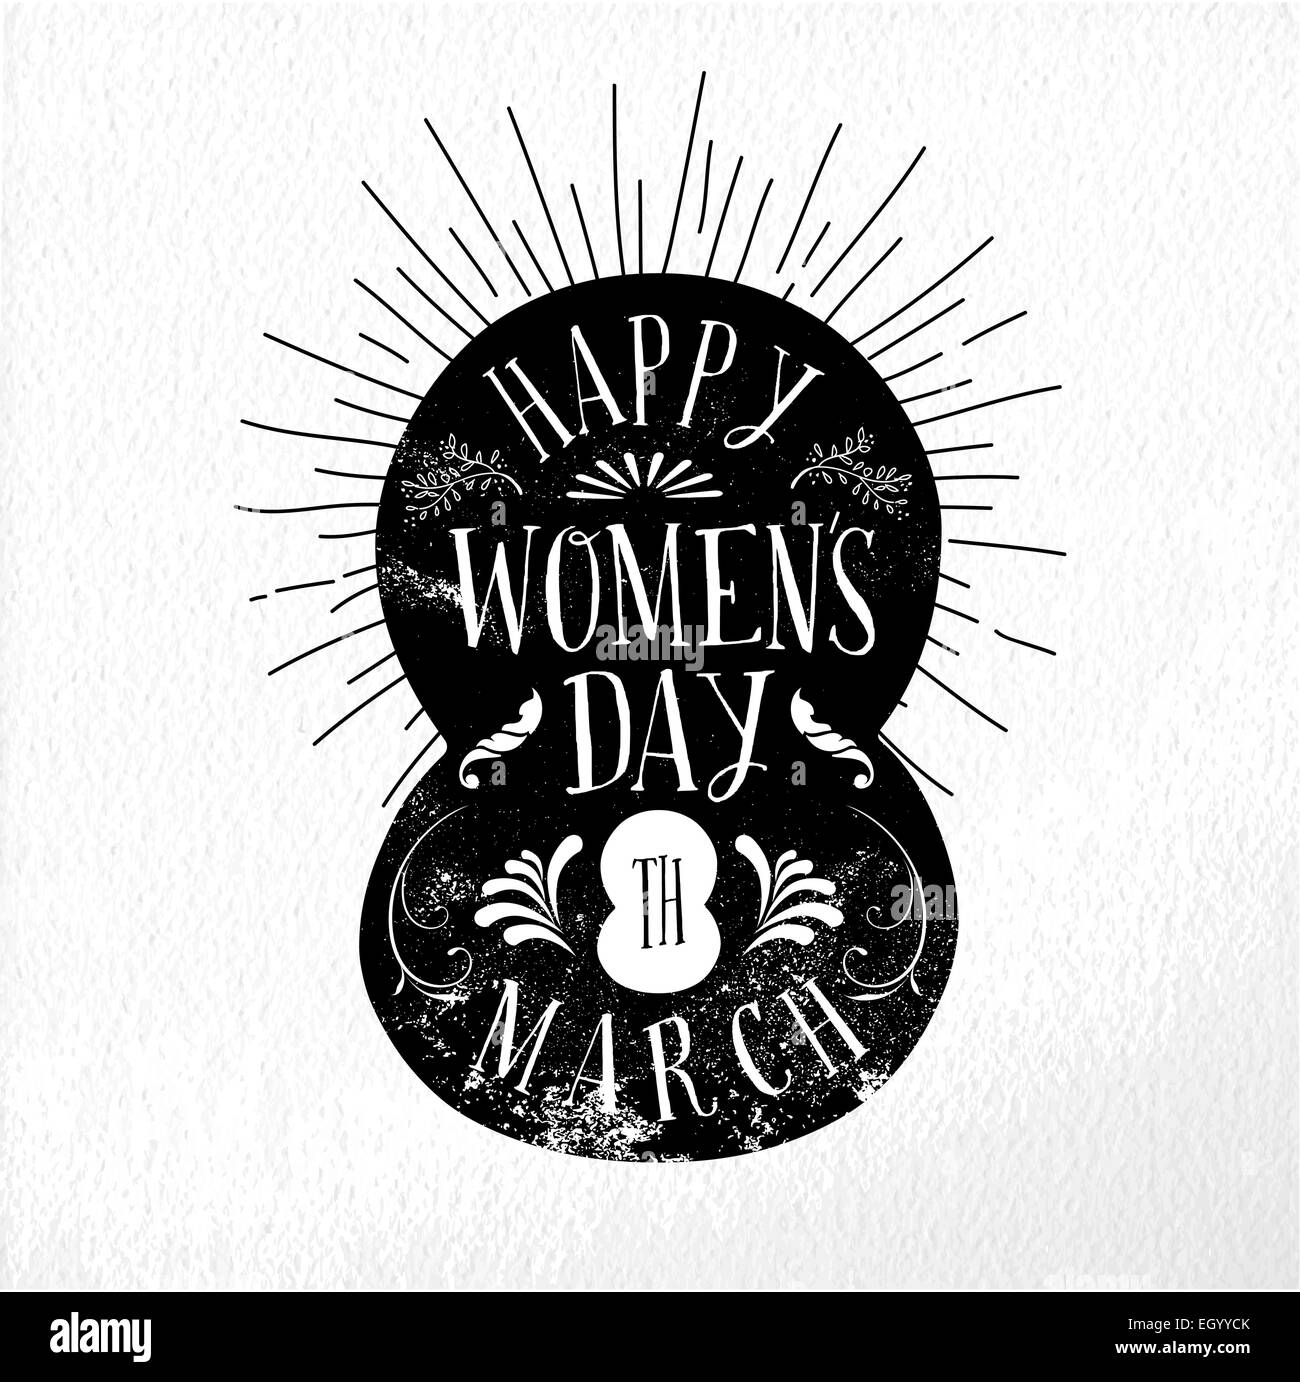 8 mars Journée des femmes heureux vintage illustration de l'étiquette. Idéal pour la conception d'affiches, cartes de vœux et présentation web. Vecteur EPS10. Illustration de Vecteur